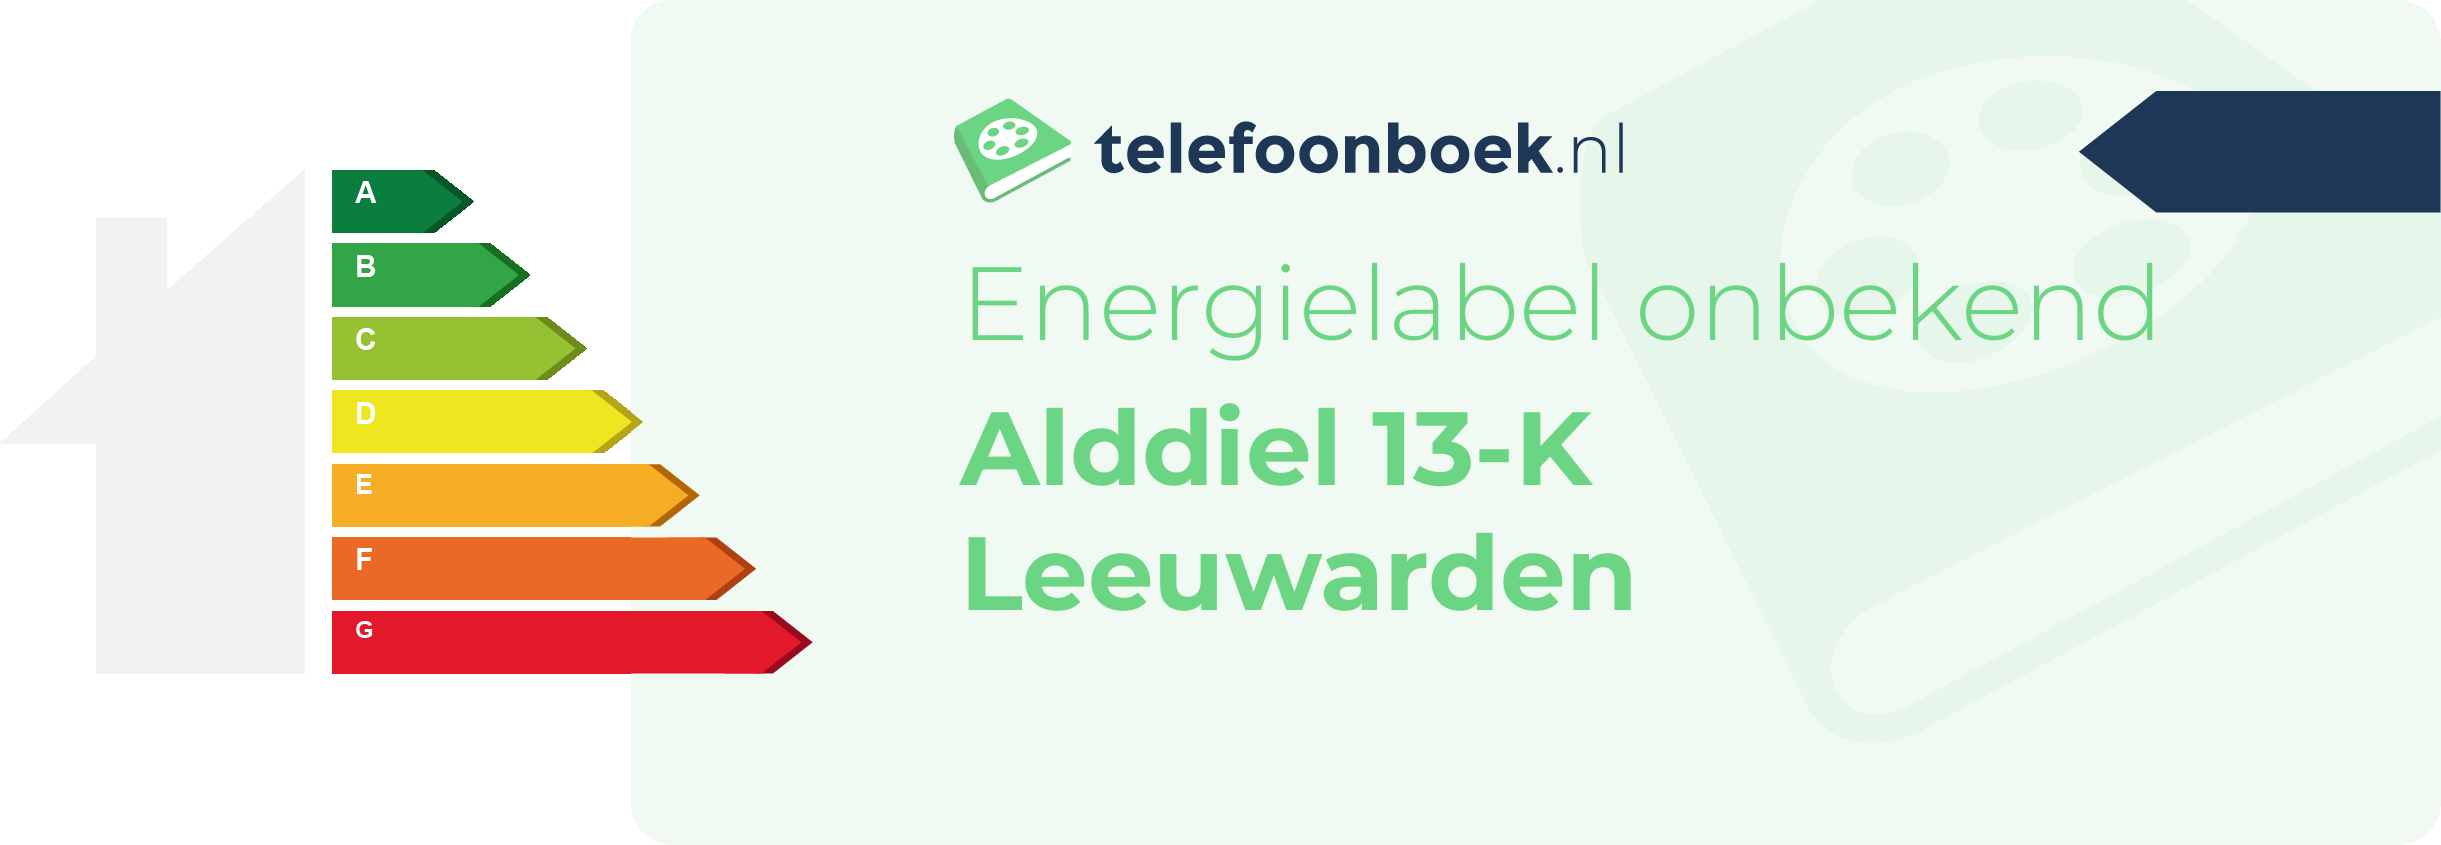 Energielabel Alddiel 13-K Leeuwarden